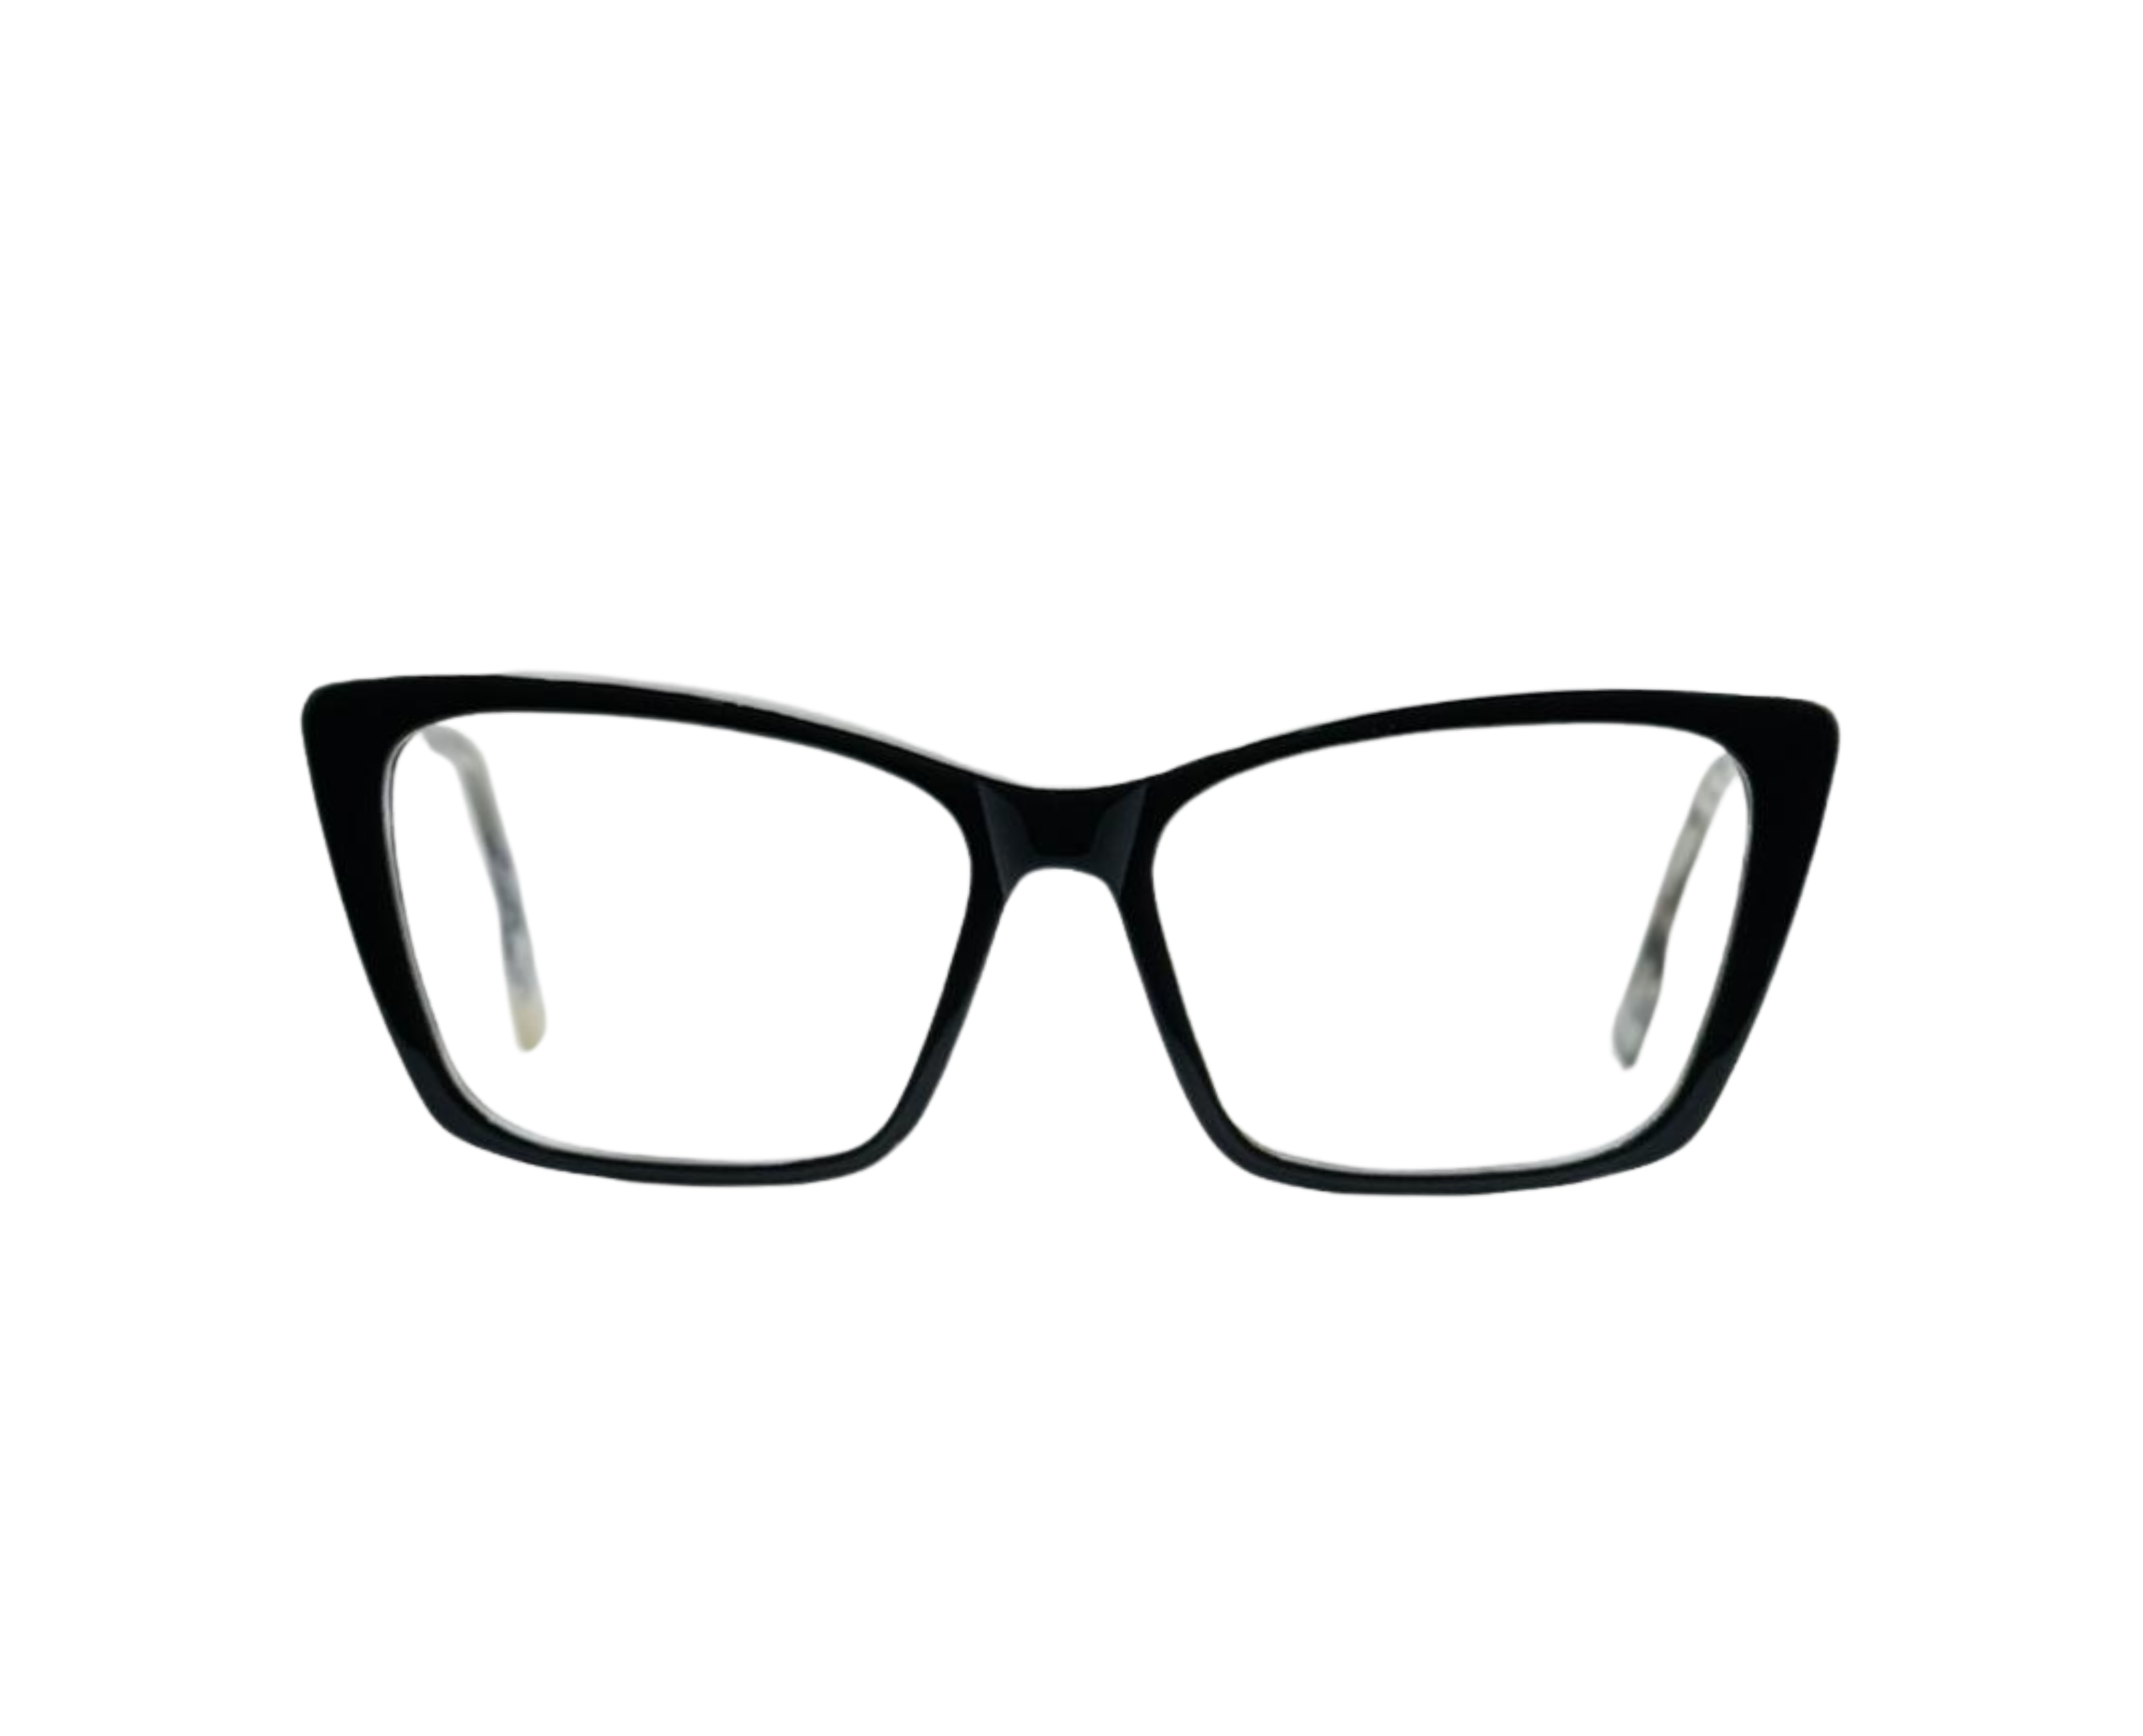 NS Luxury - J03 - Black - Eyeglasses